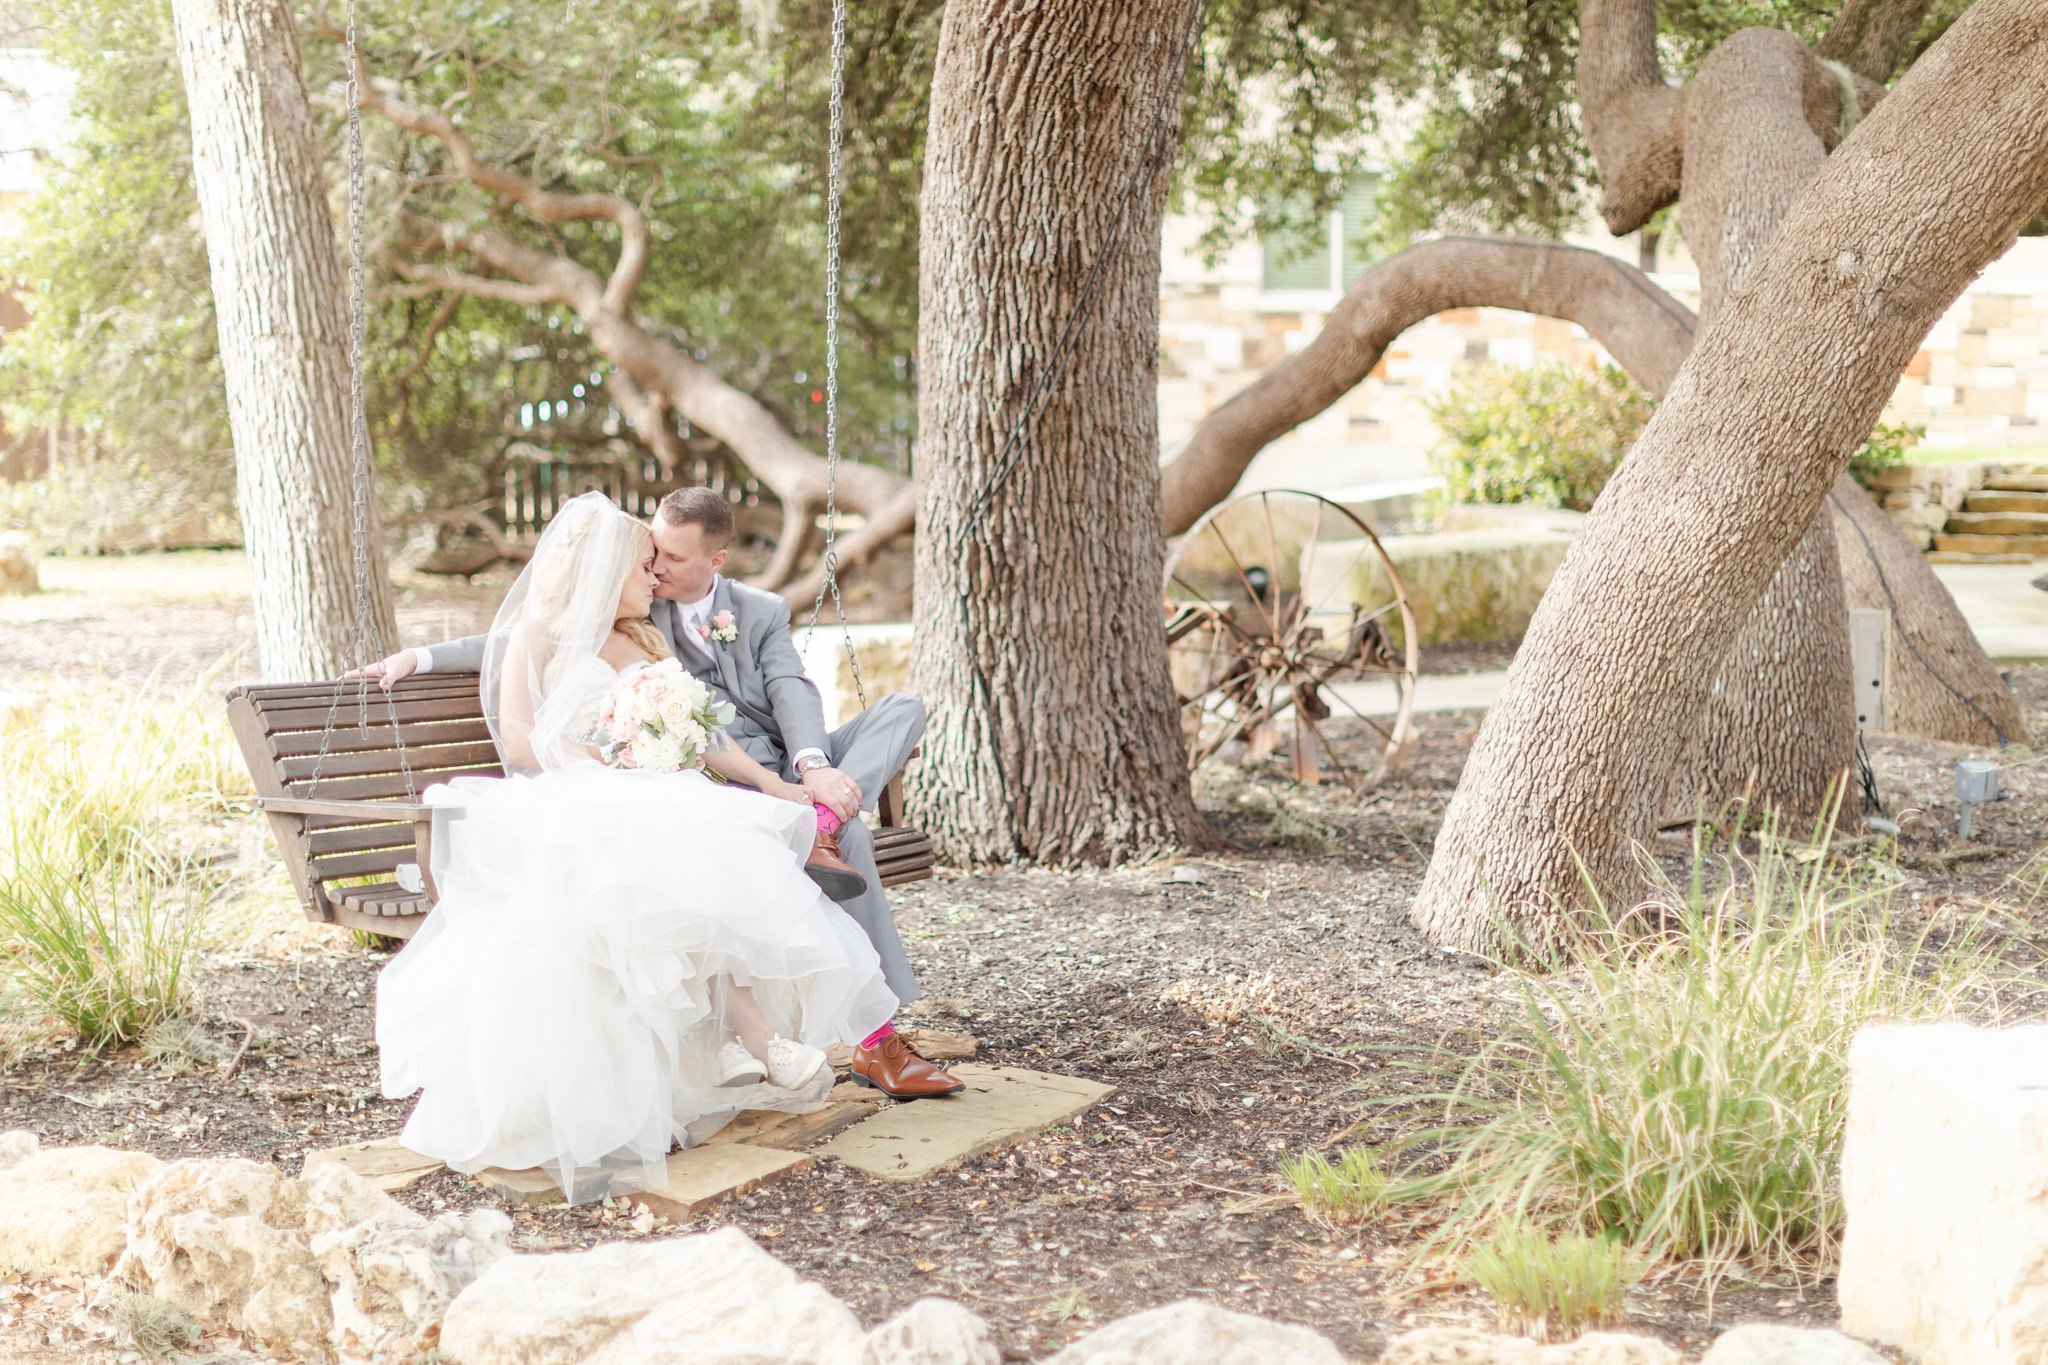 A blush and gold wedding at Hidden Falls in Spring Branch, TX by Dawn Elizabeth Studios, San Antonio Wedding Photographer